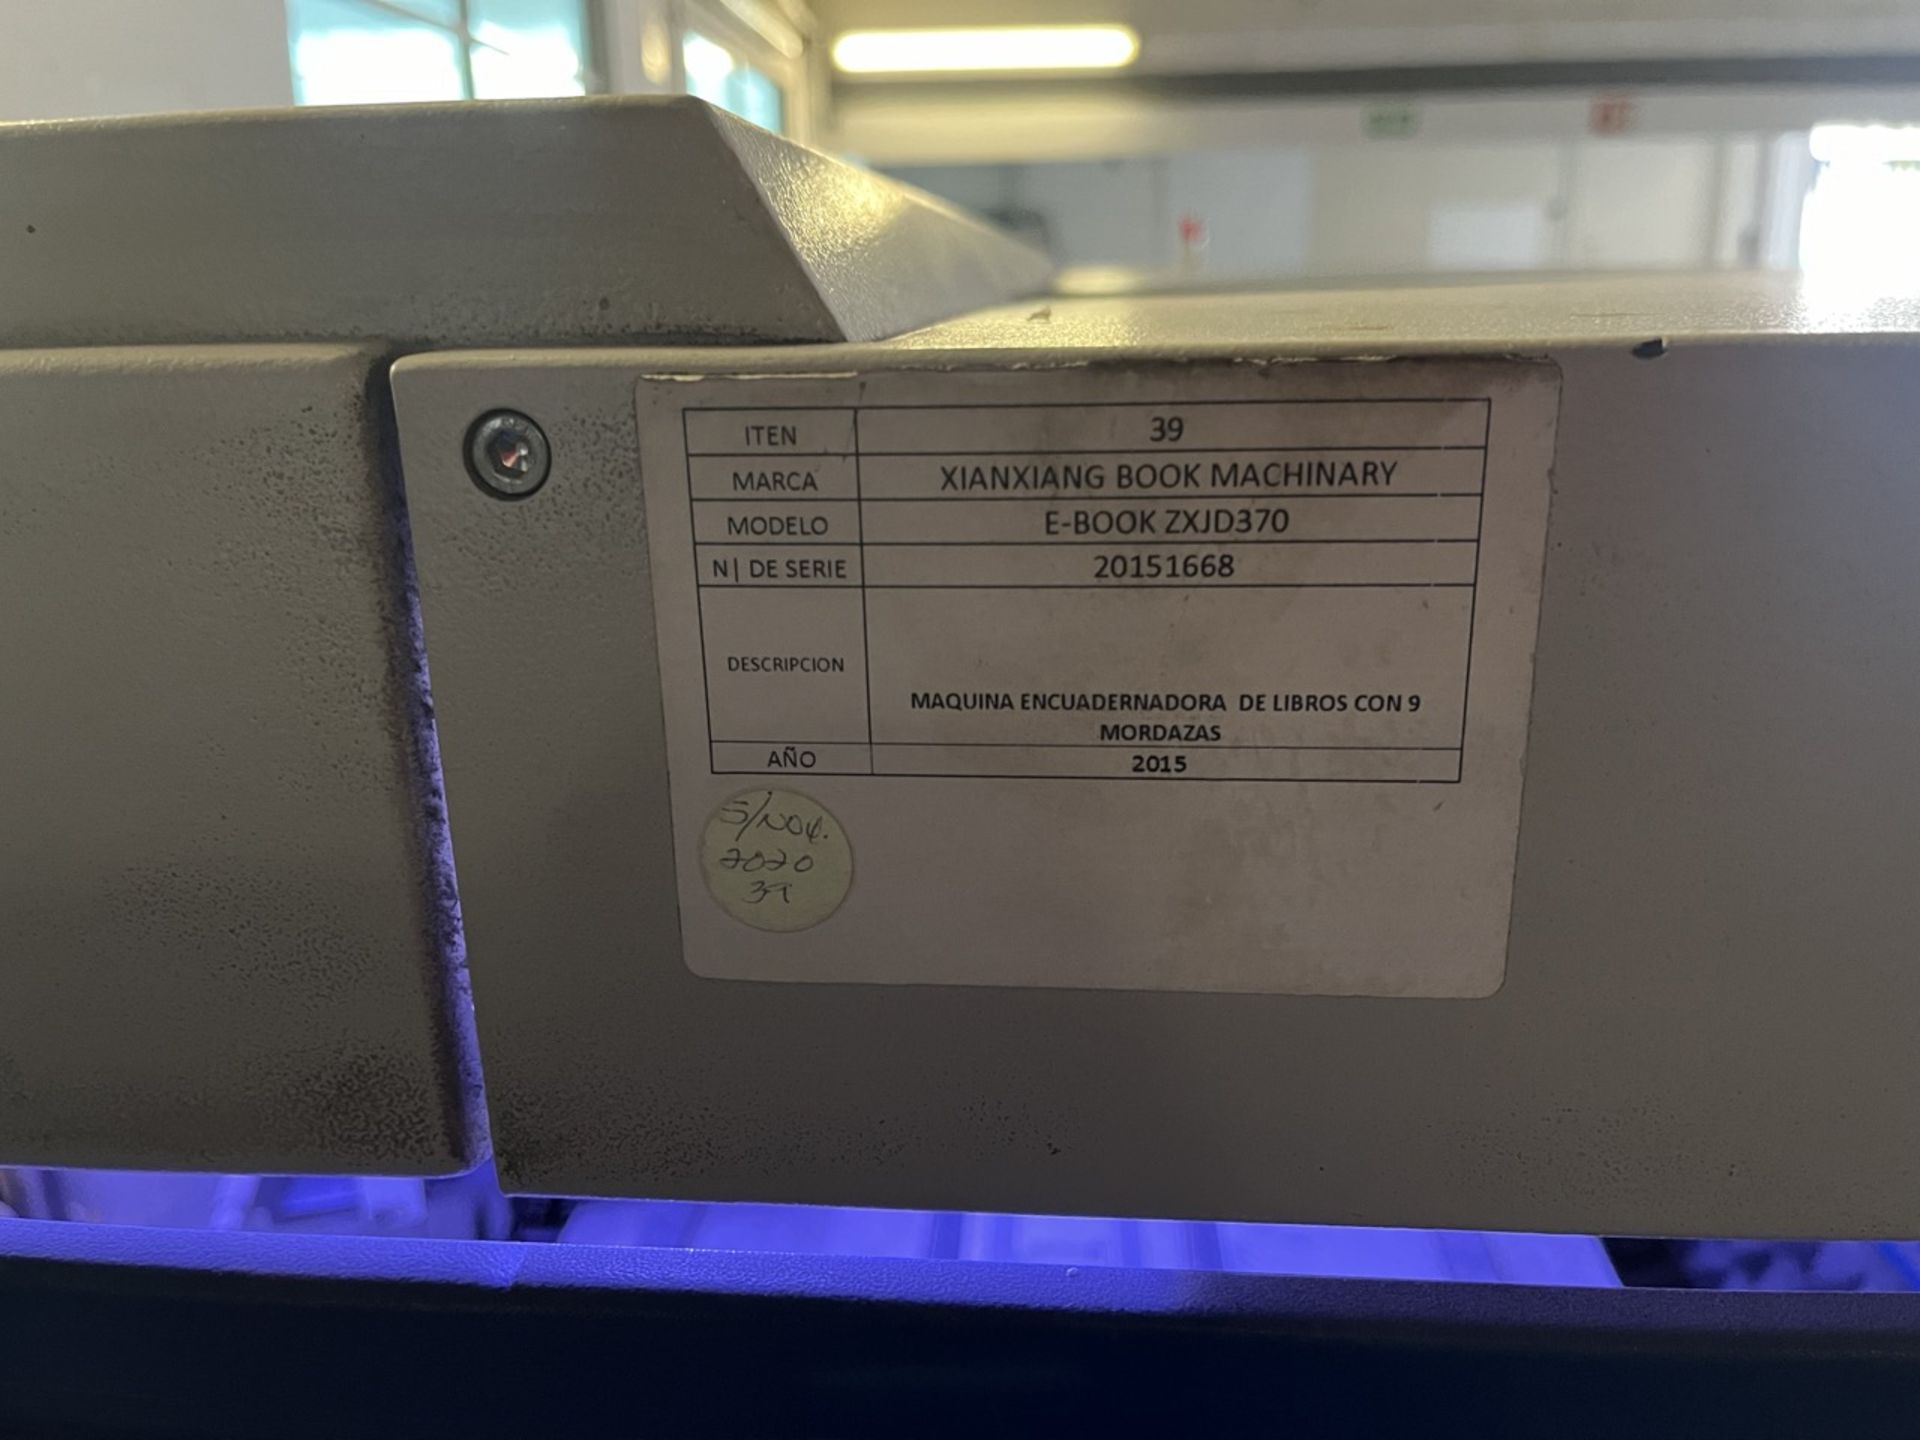 XINXIANG BOX MACHINARY 9 jaw book binding machine, Model E-BOOK ZXJD370, Serial No. 20151668, Year - Image 23 of 27